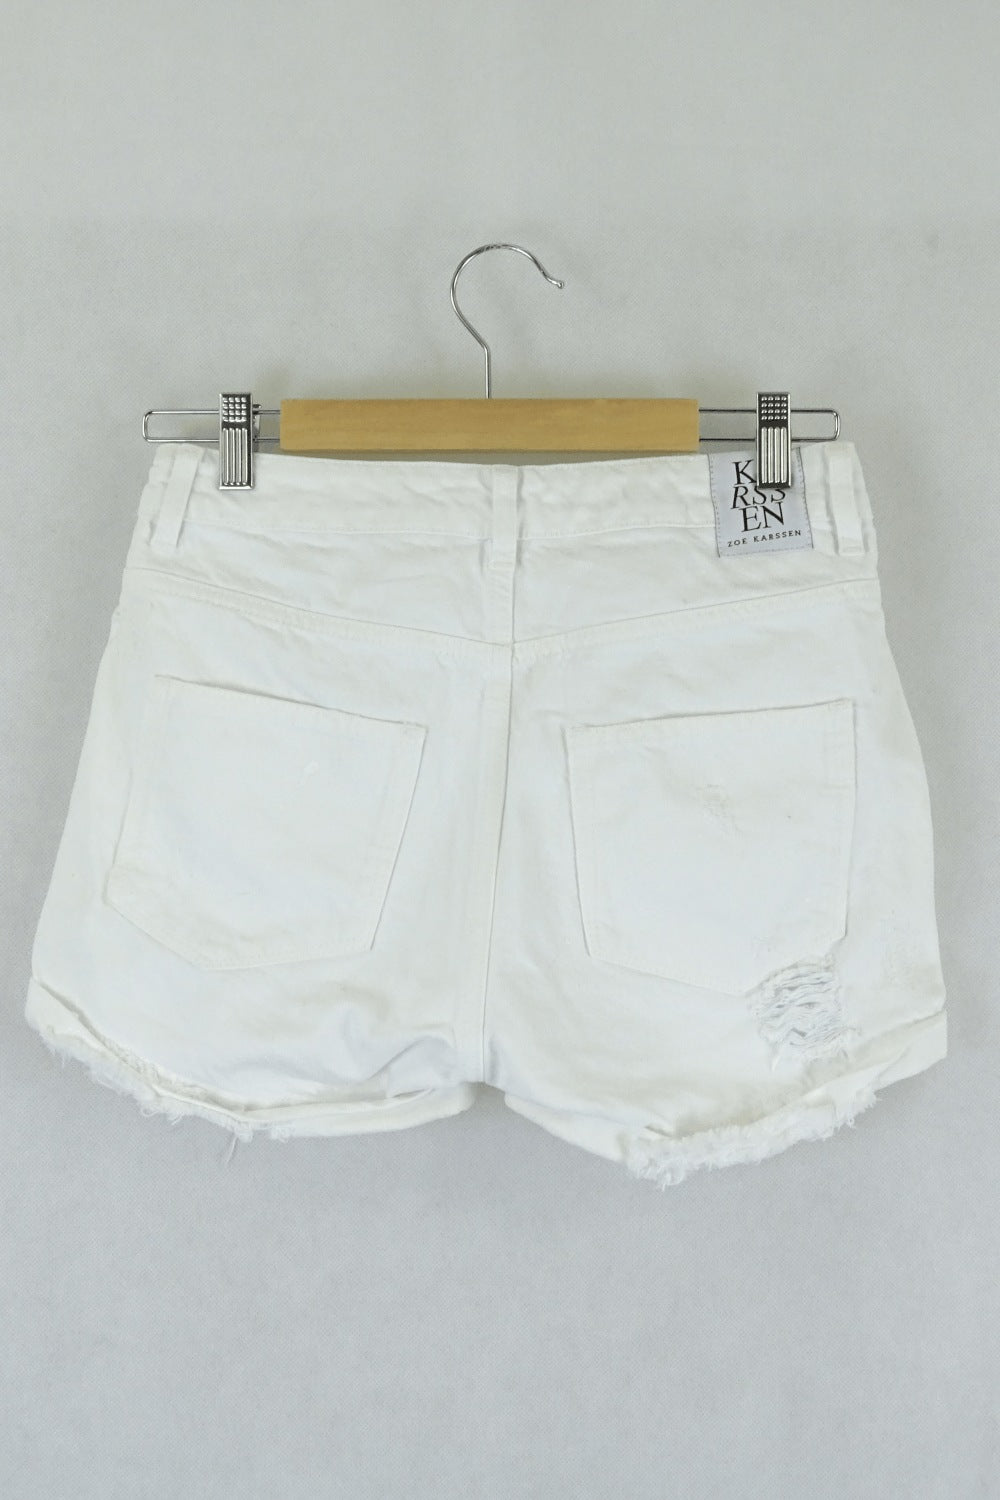 Zoe Karssen white shorts 24